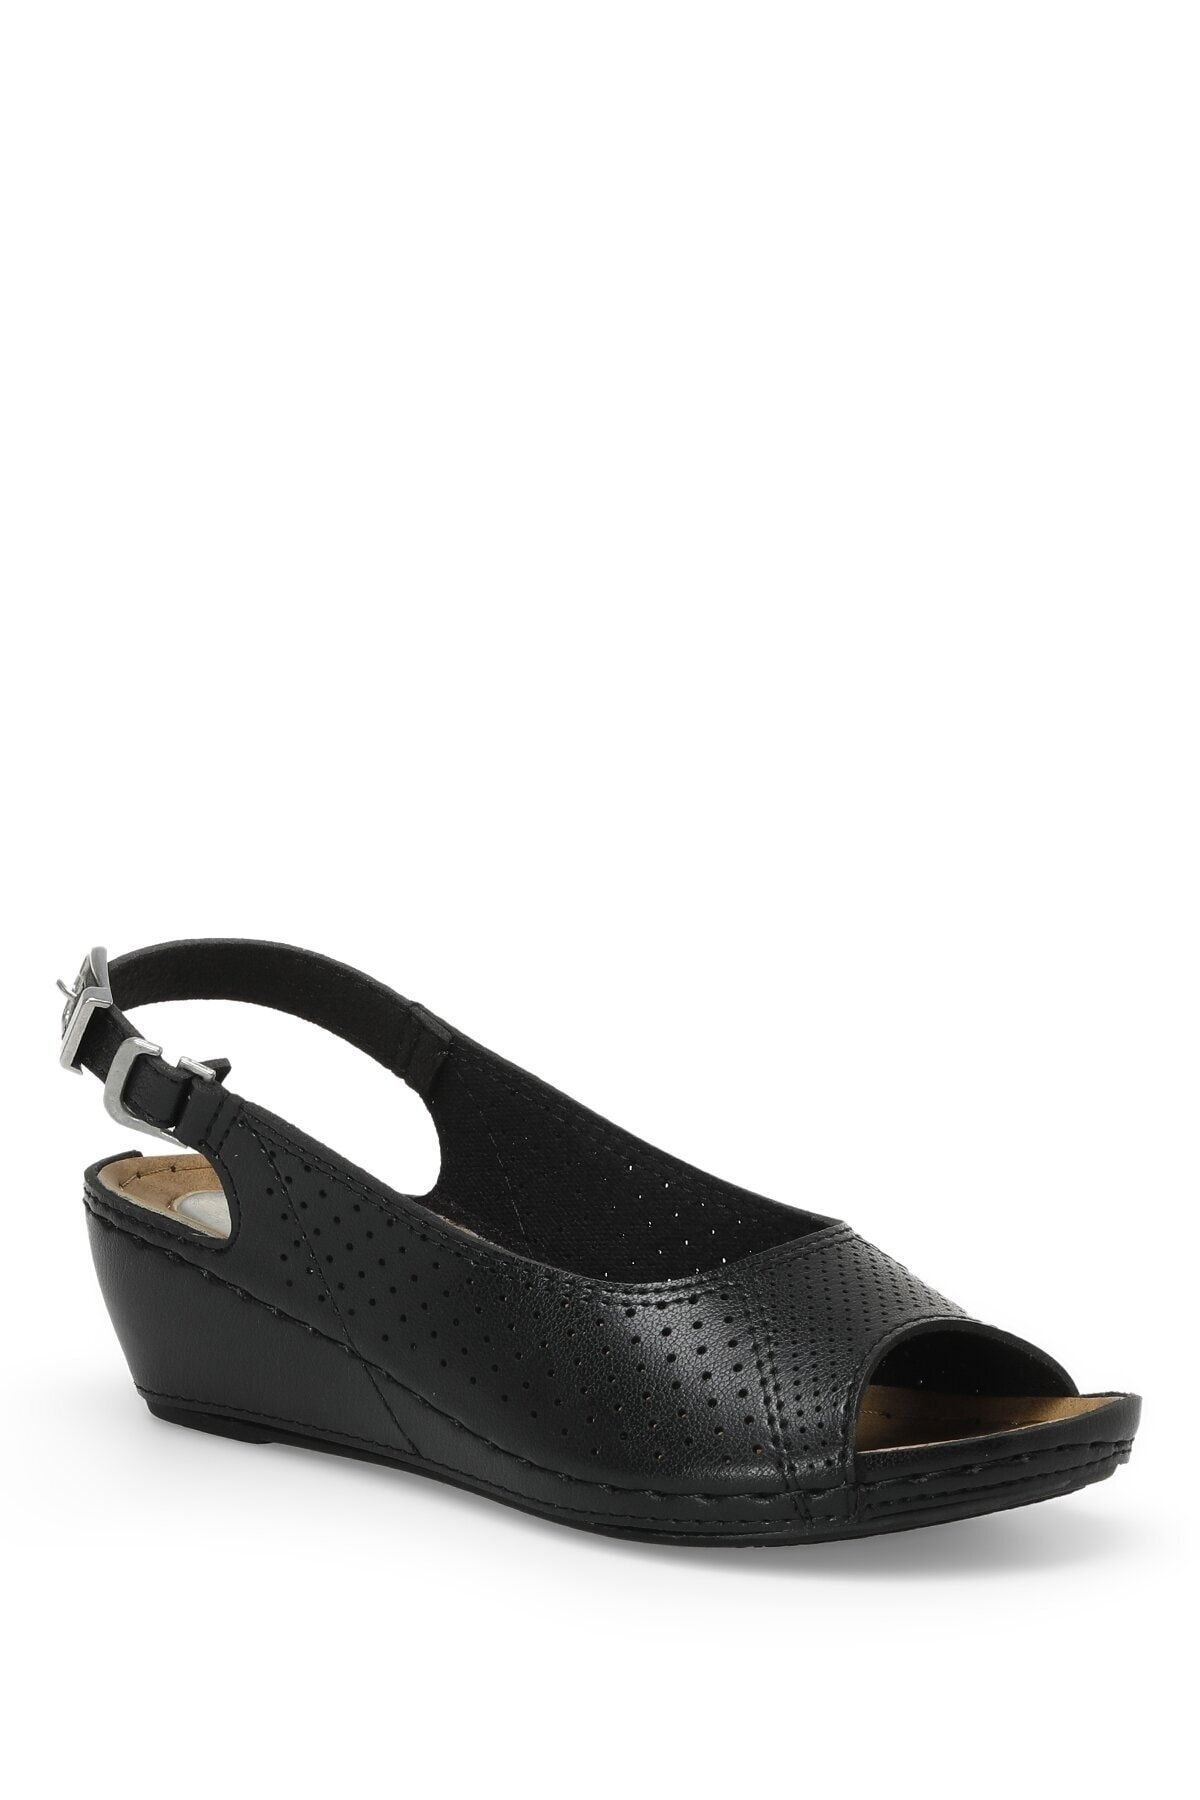 Polaris 162750.z3fx Siyah Kadın Comfort Sandalet